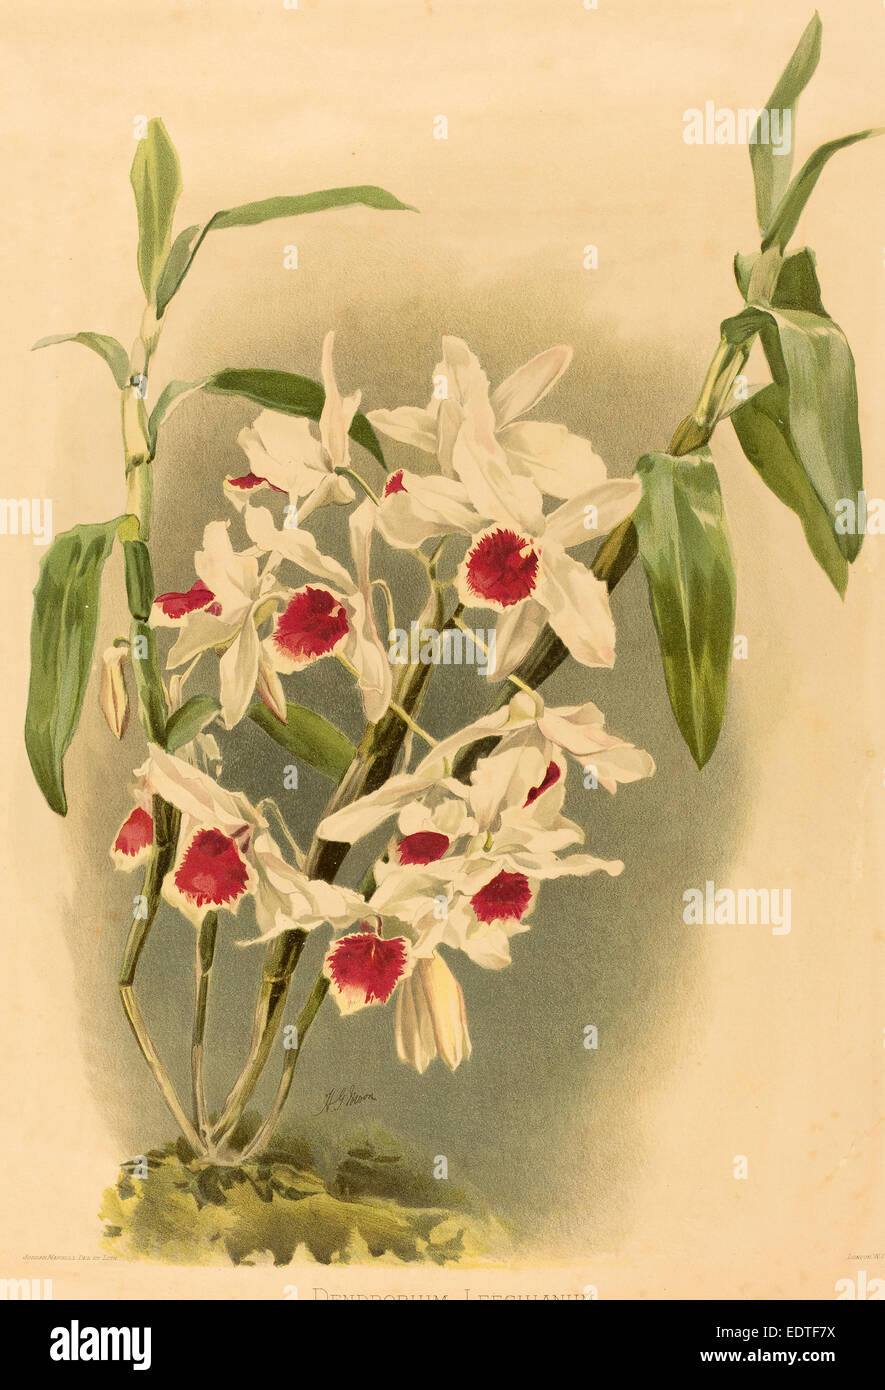 Joseph Mansell dopo Henry George Luna (British, attivo del XIX secolo), Dendrobium Leechianum, Litografia a colori Foto Stock